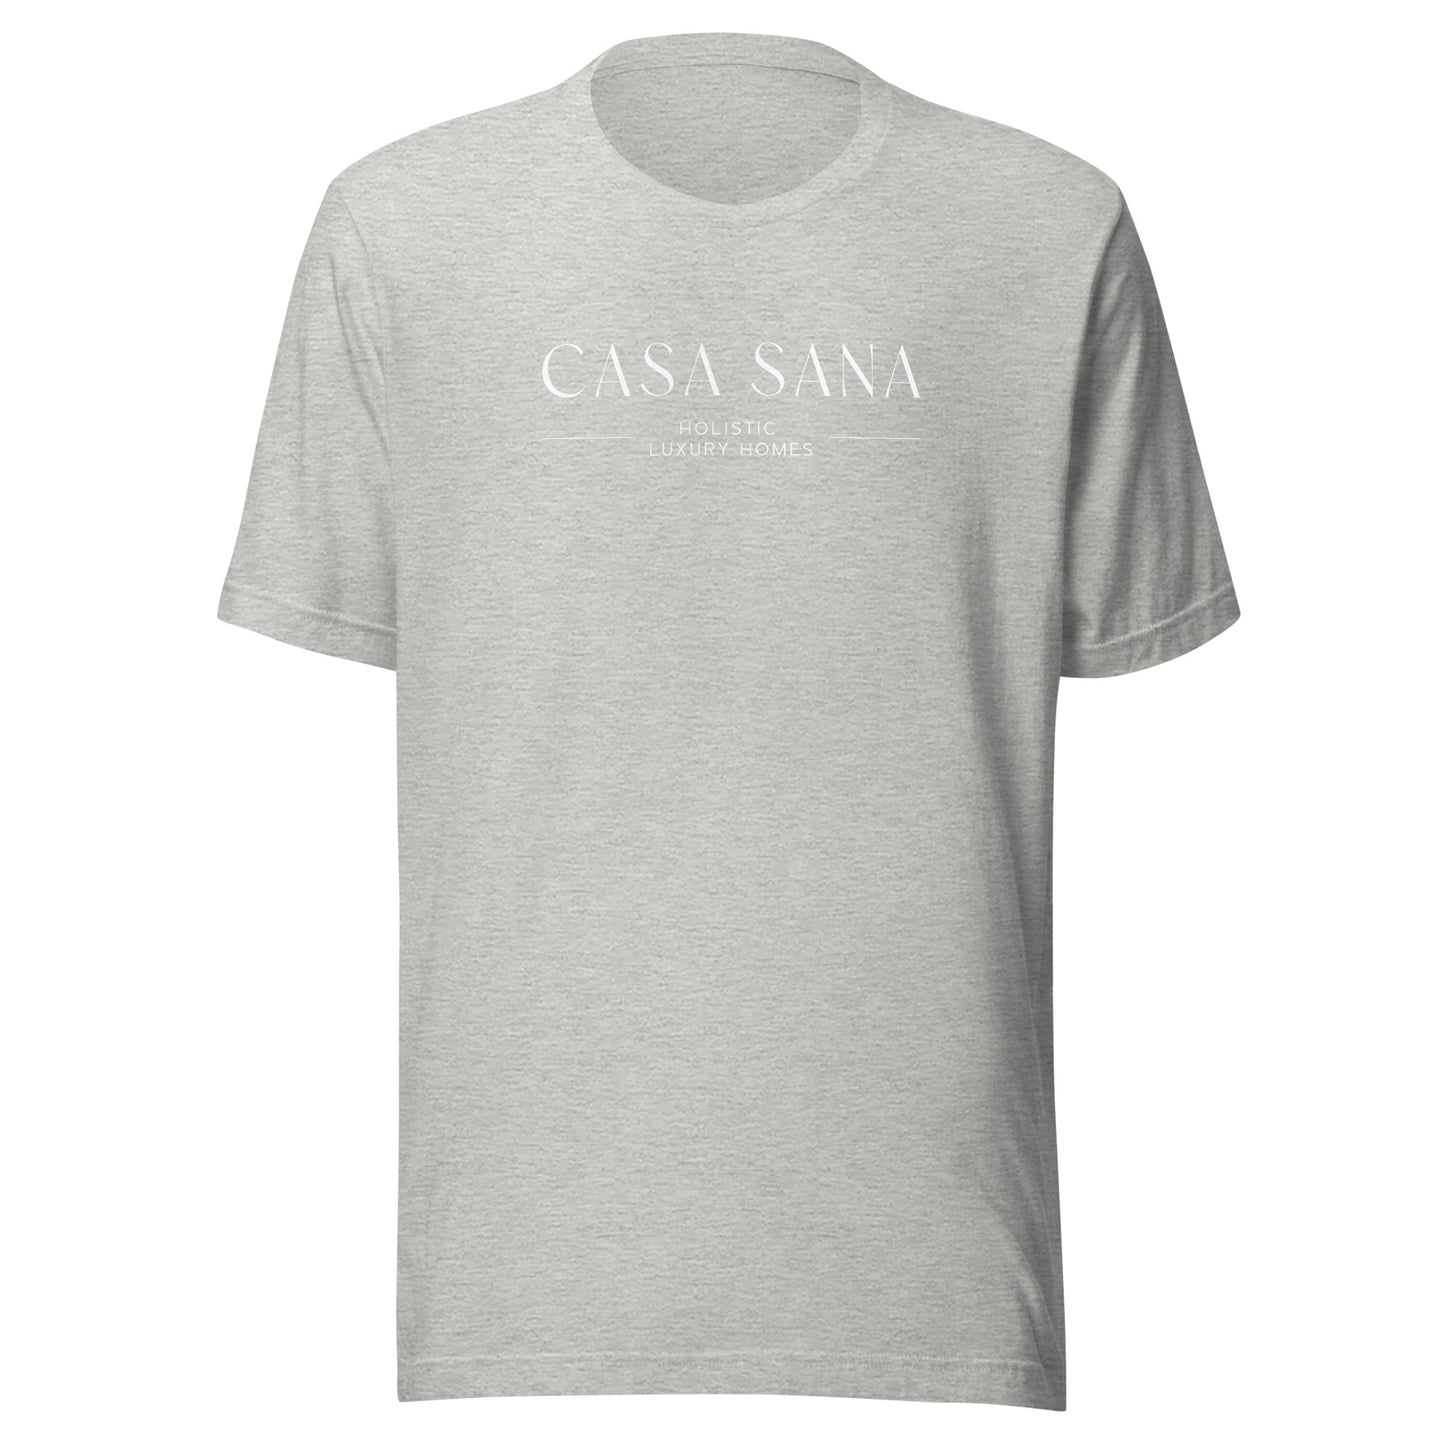 Casa Sana Unisex t-shirt